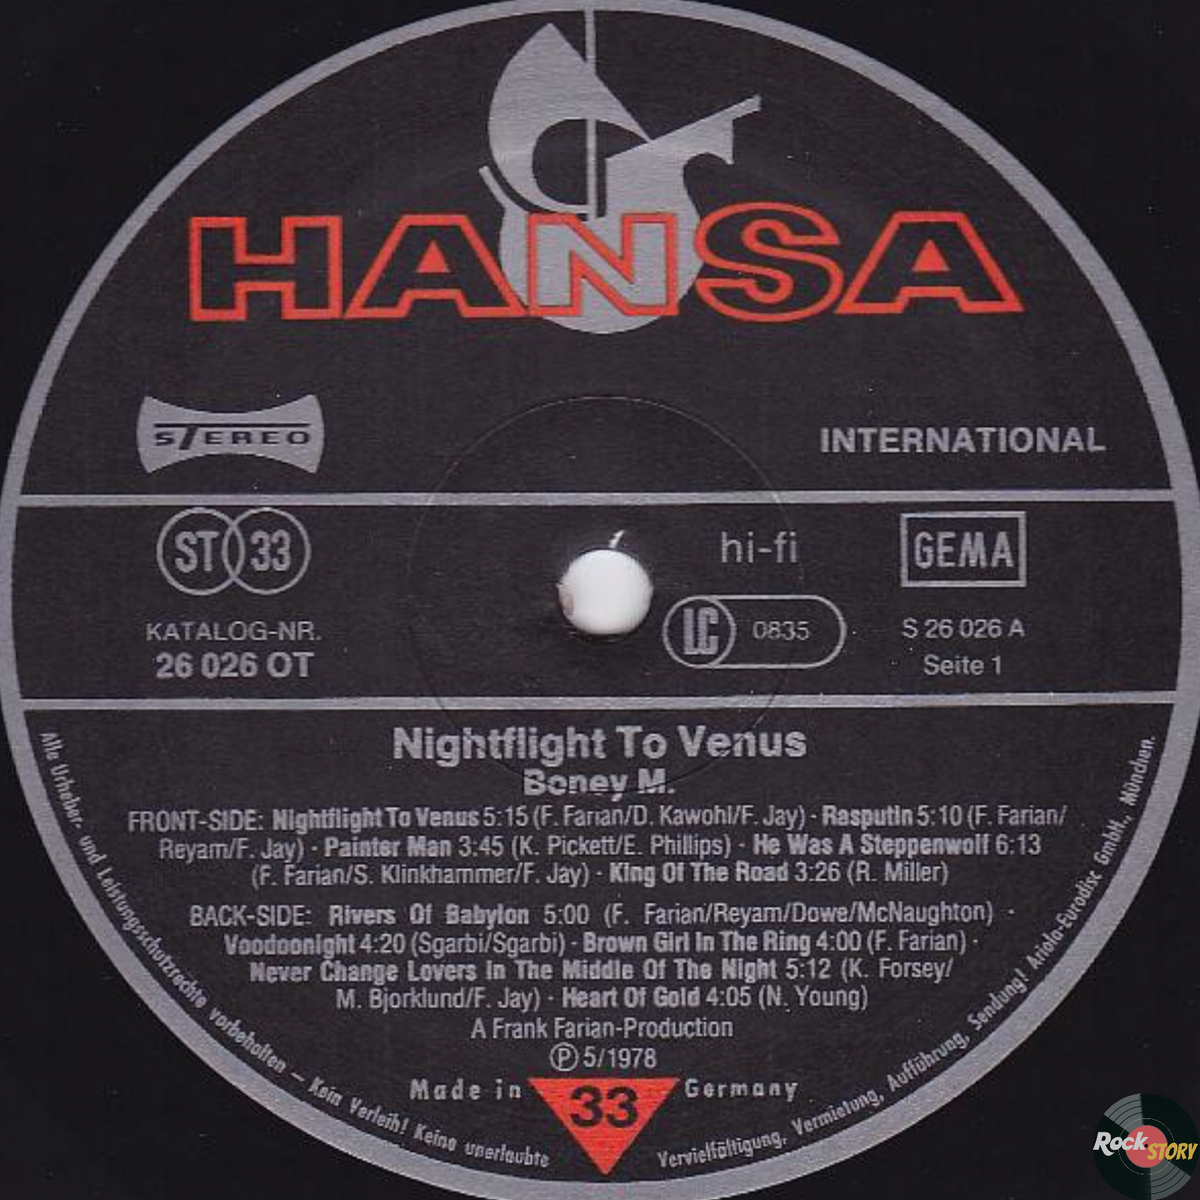 Слушать бони полет на венеру. 1978 - Nightflight to Venus. Boney m Nightflight to Venus 1978. Boney m Nightflight to Venus 1978 пластинки. Альбомом «Nightflight to Venus»,.